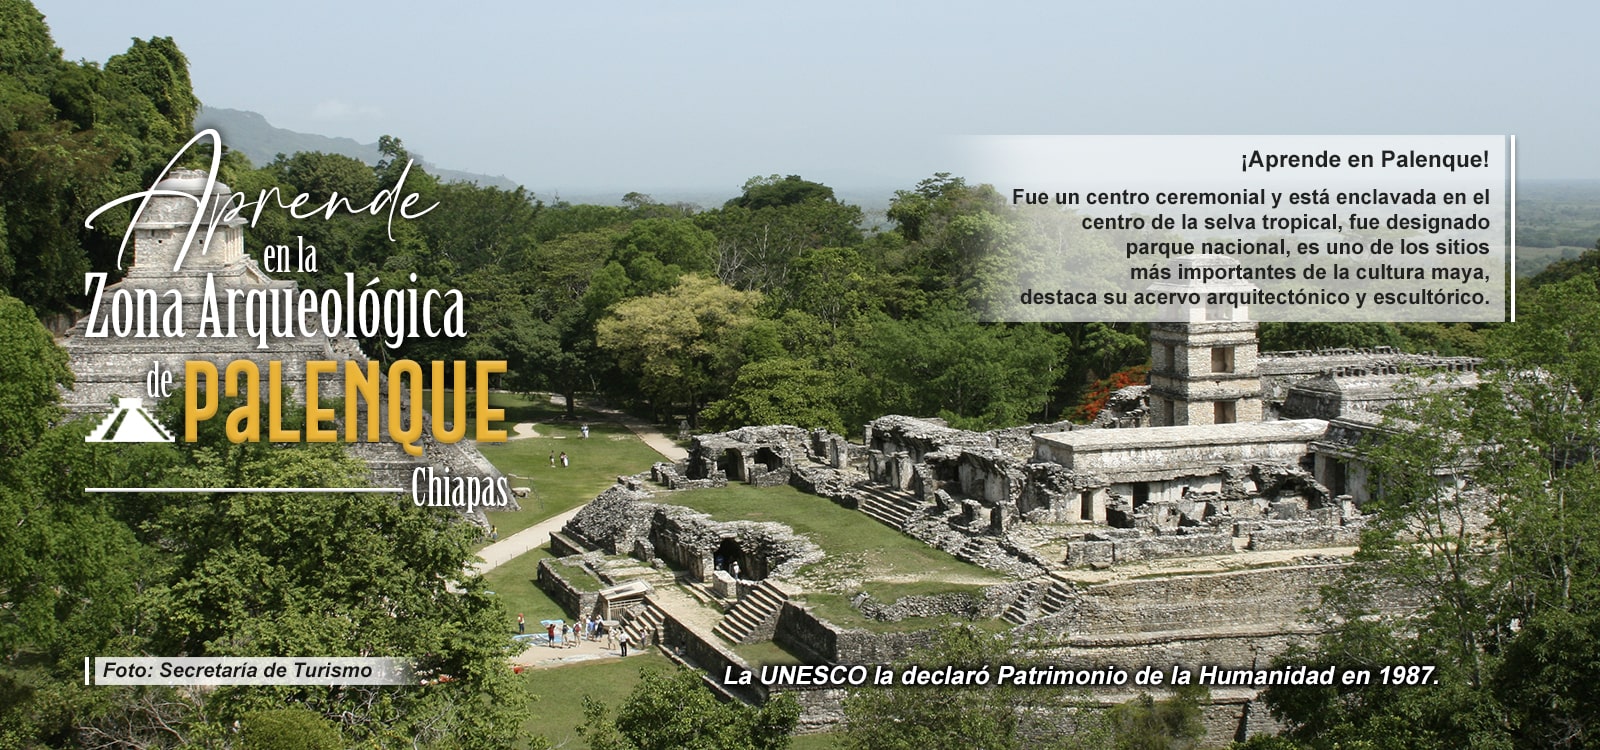 ¡Aprende en Palenque!